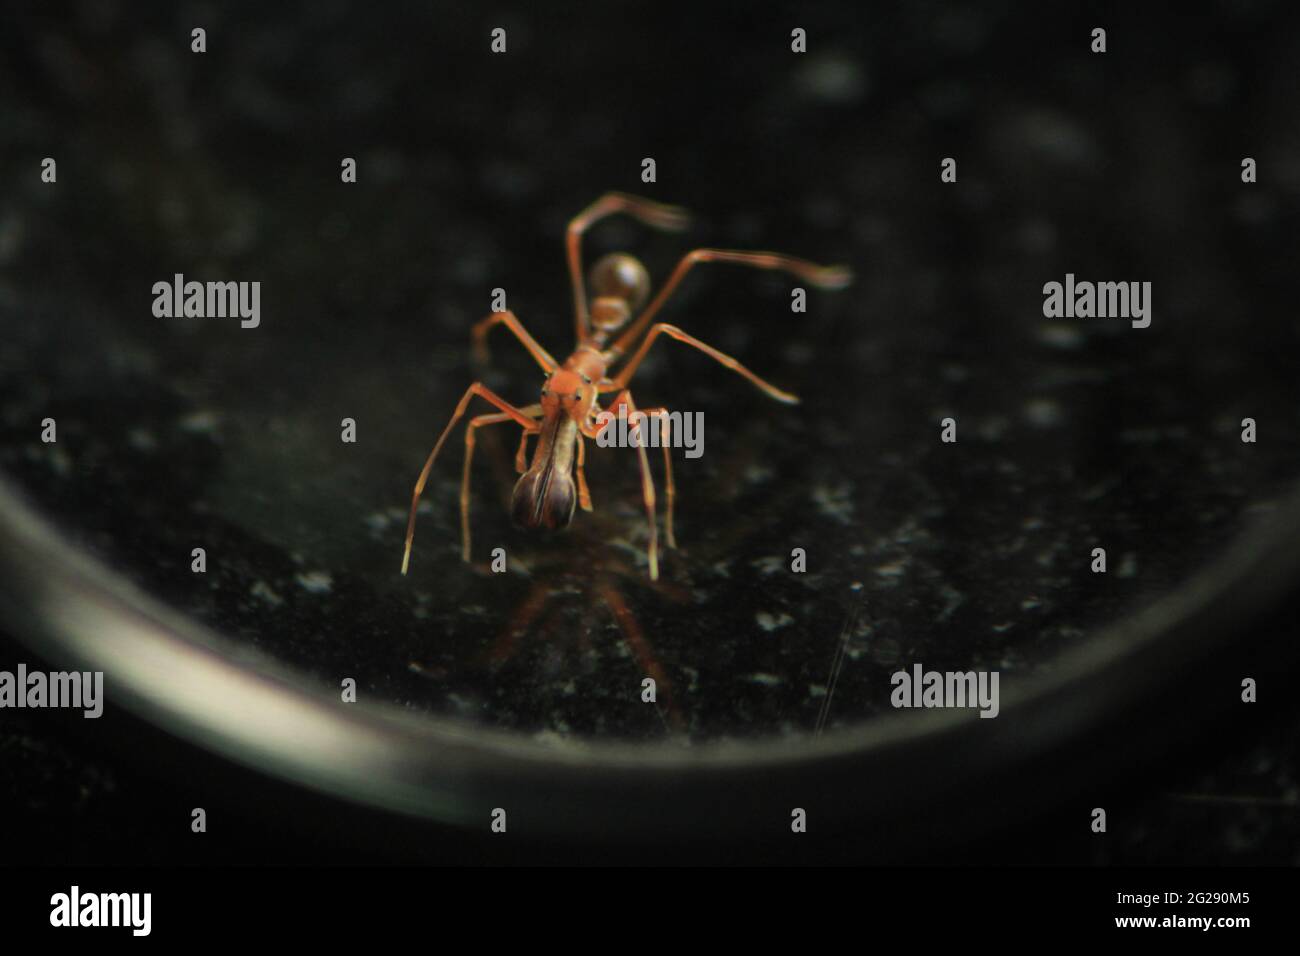 Spinnenanamse - Insekten - Spinne entwickelte sich zu Ameisenformen, um sich in einer Ameisenkolonie zu vereinigen und sich von anderen Ameisen zu ernähren. Verkleidete Spinne. Stockfoto